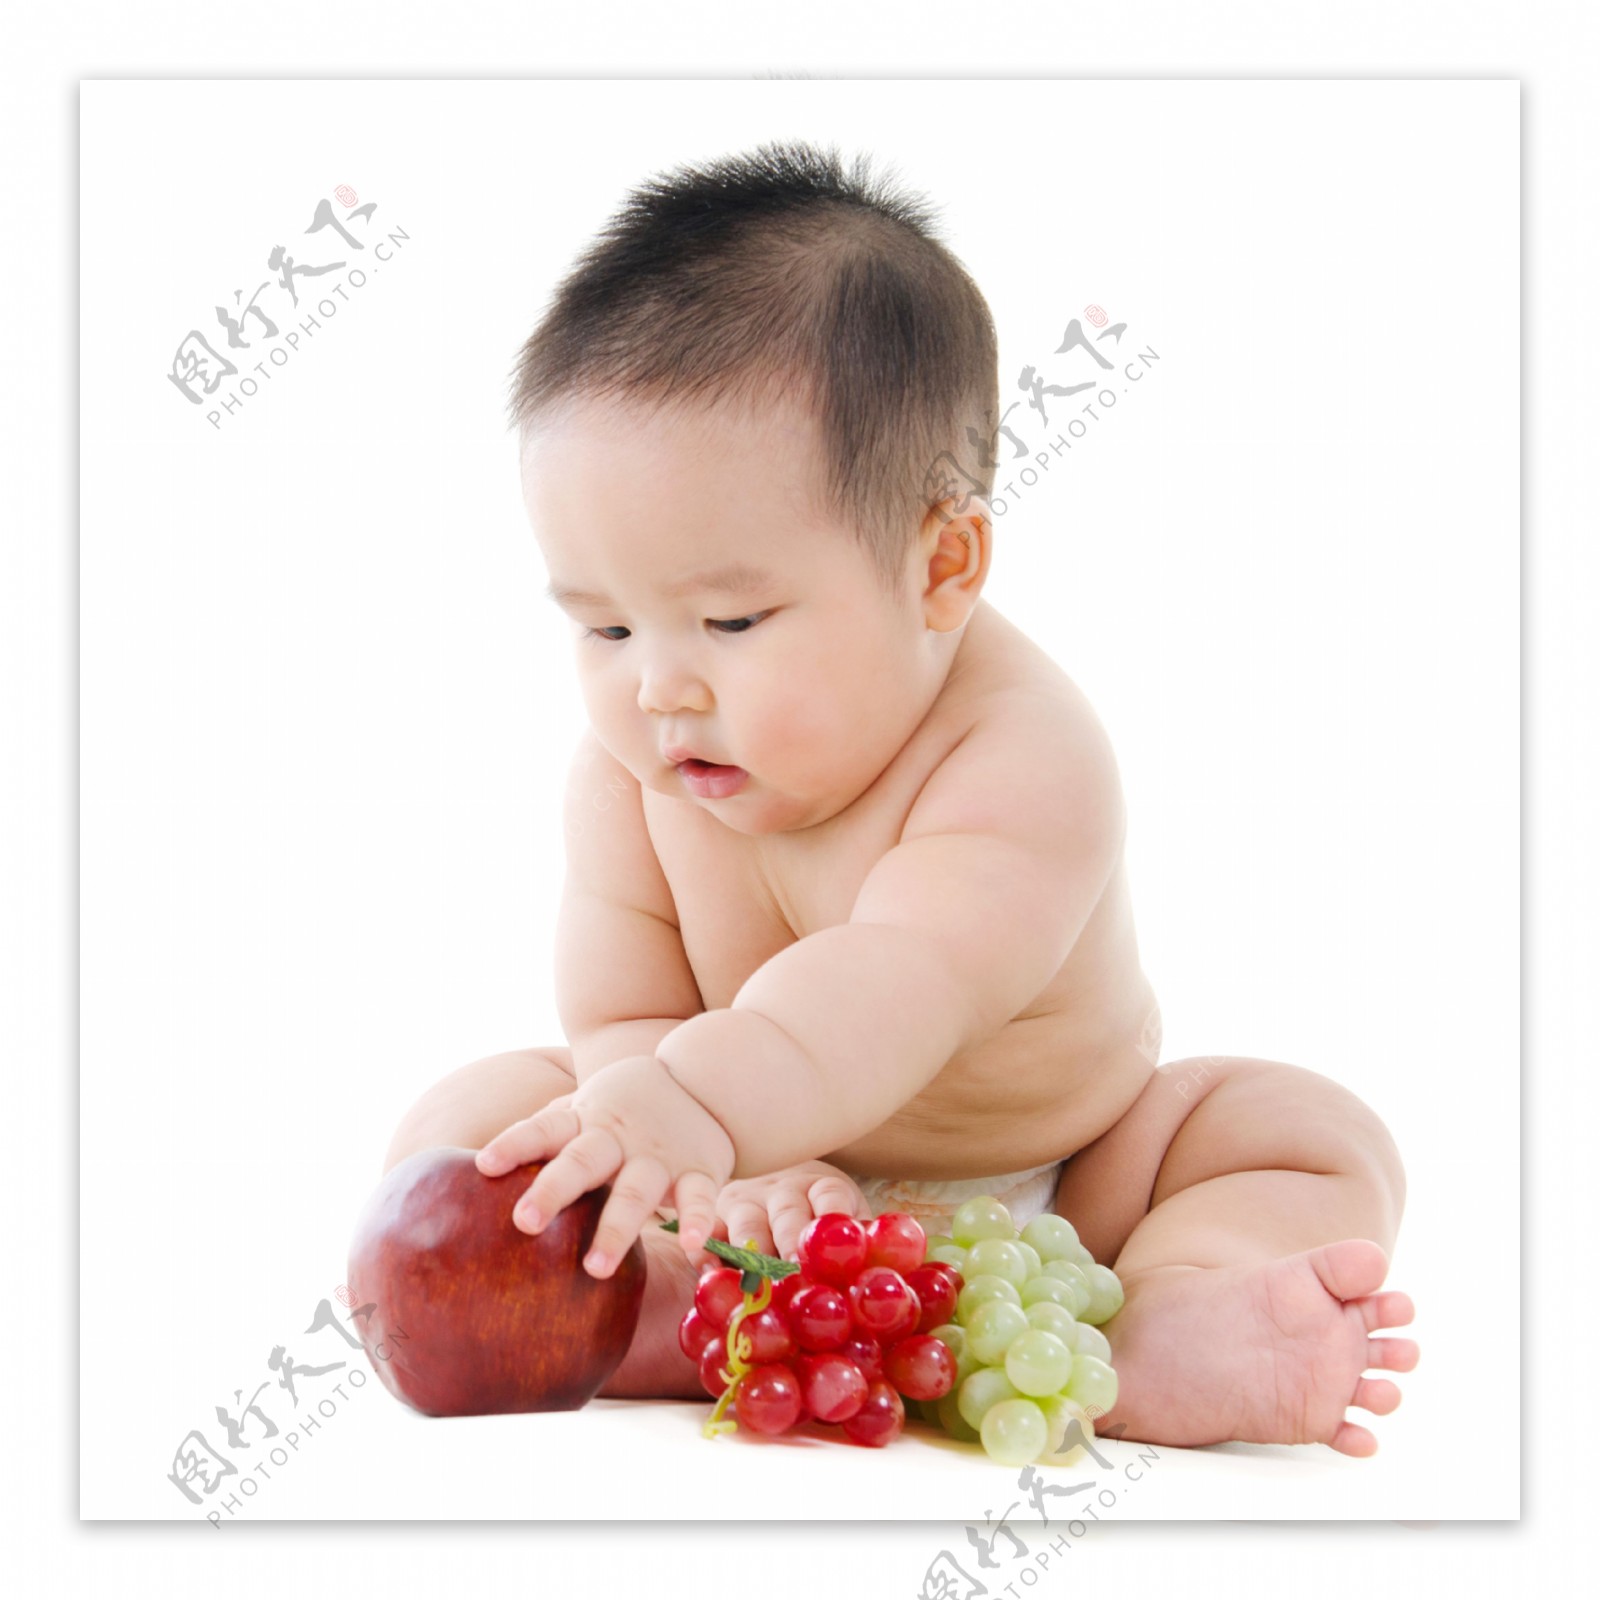 在拿水果的婴儿图片